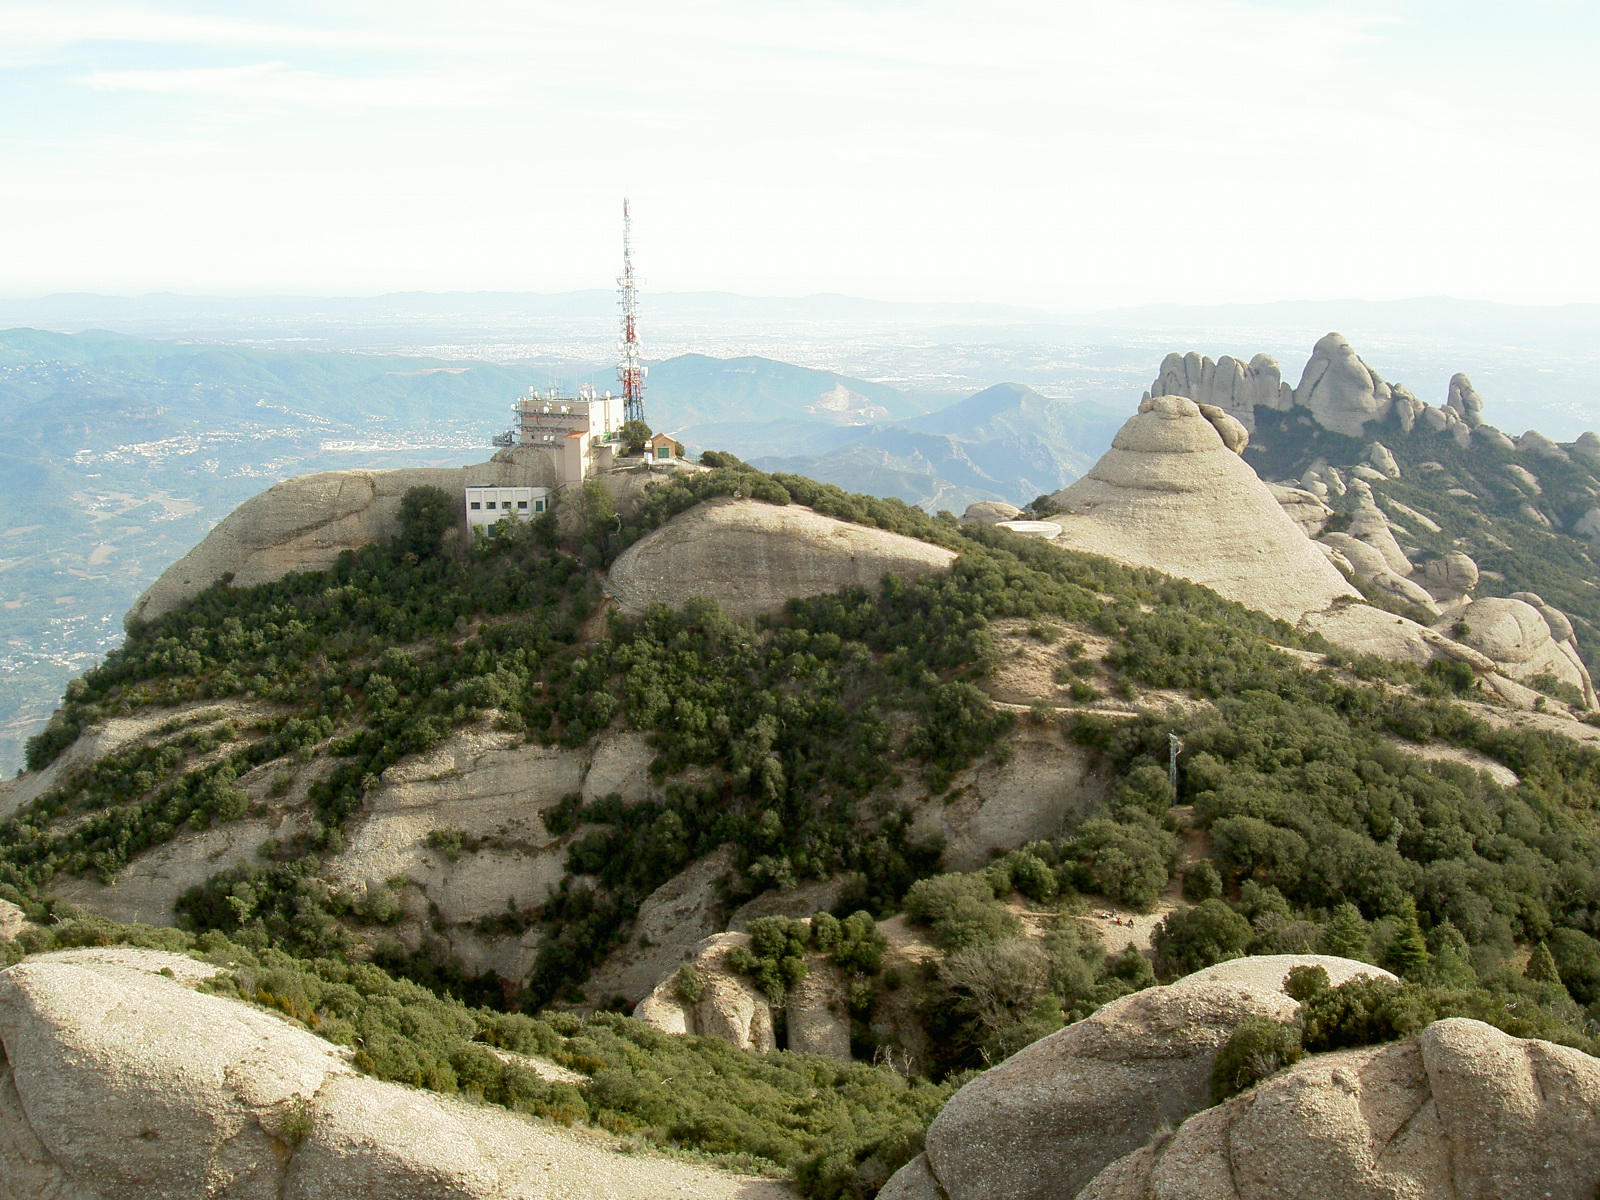 Vista des de Sant Jeroni, Montserrat